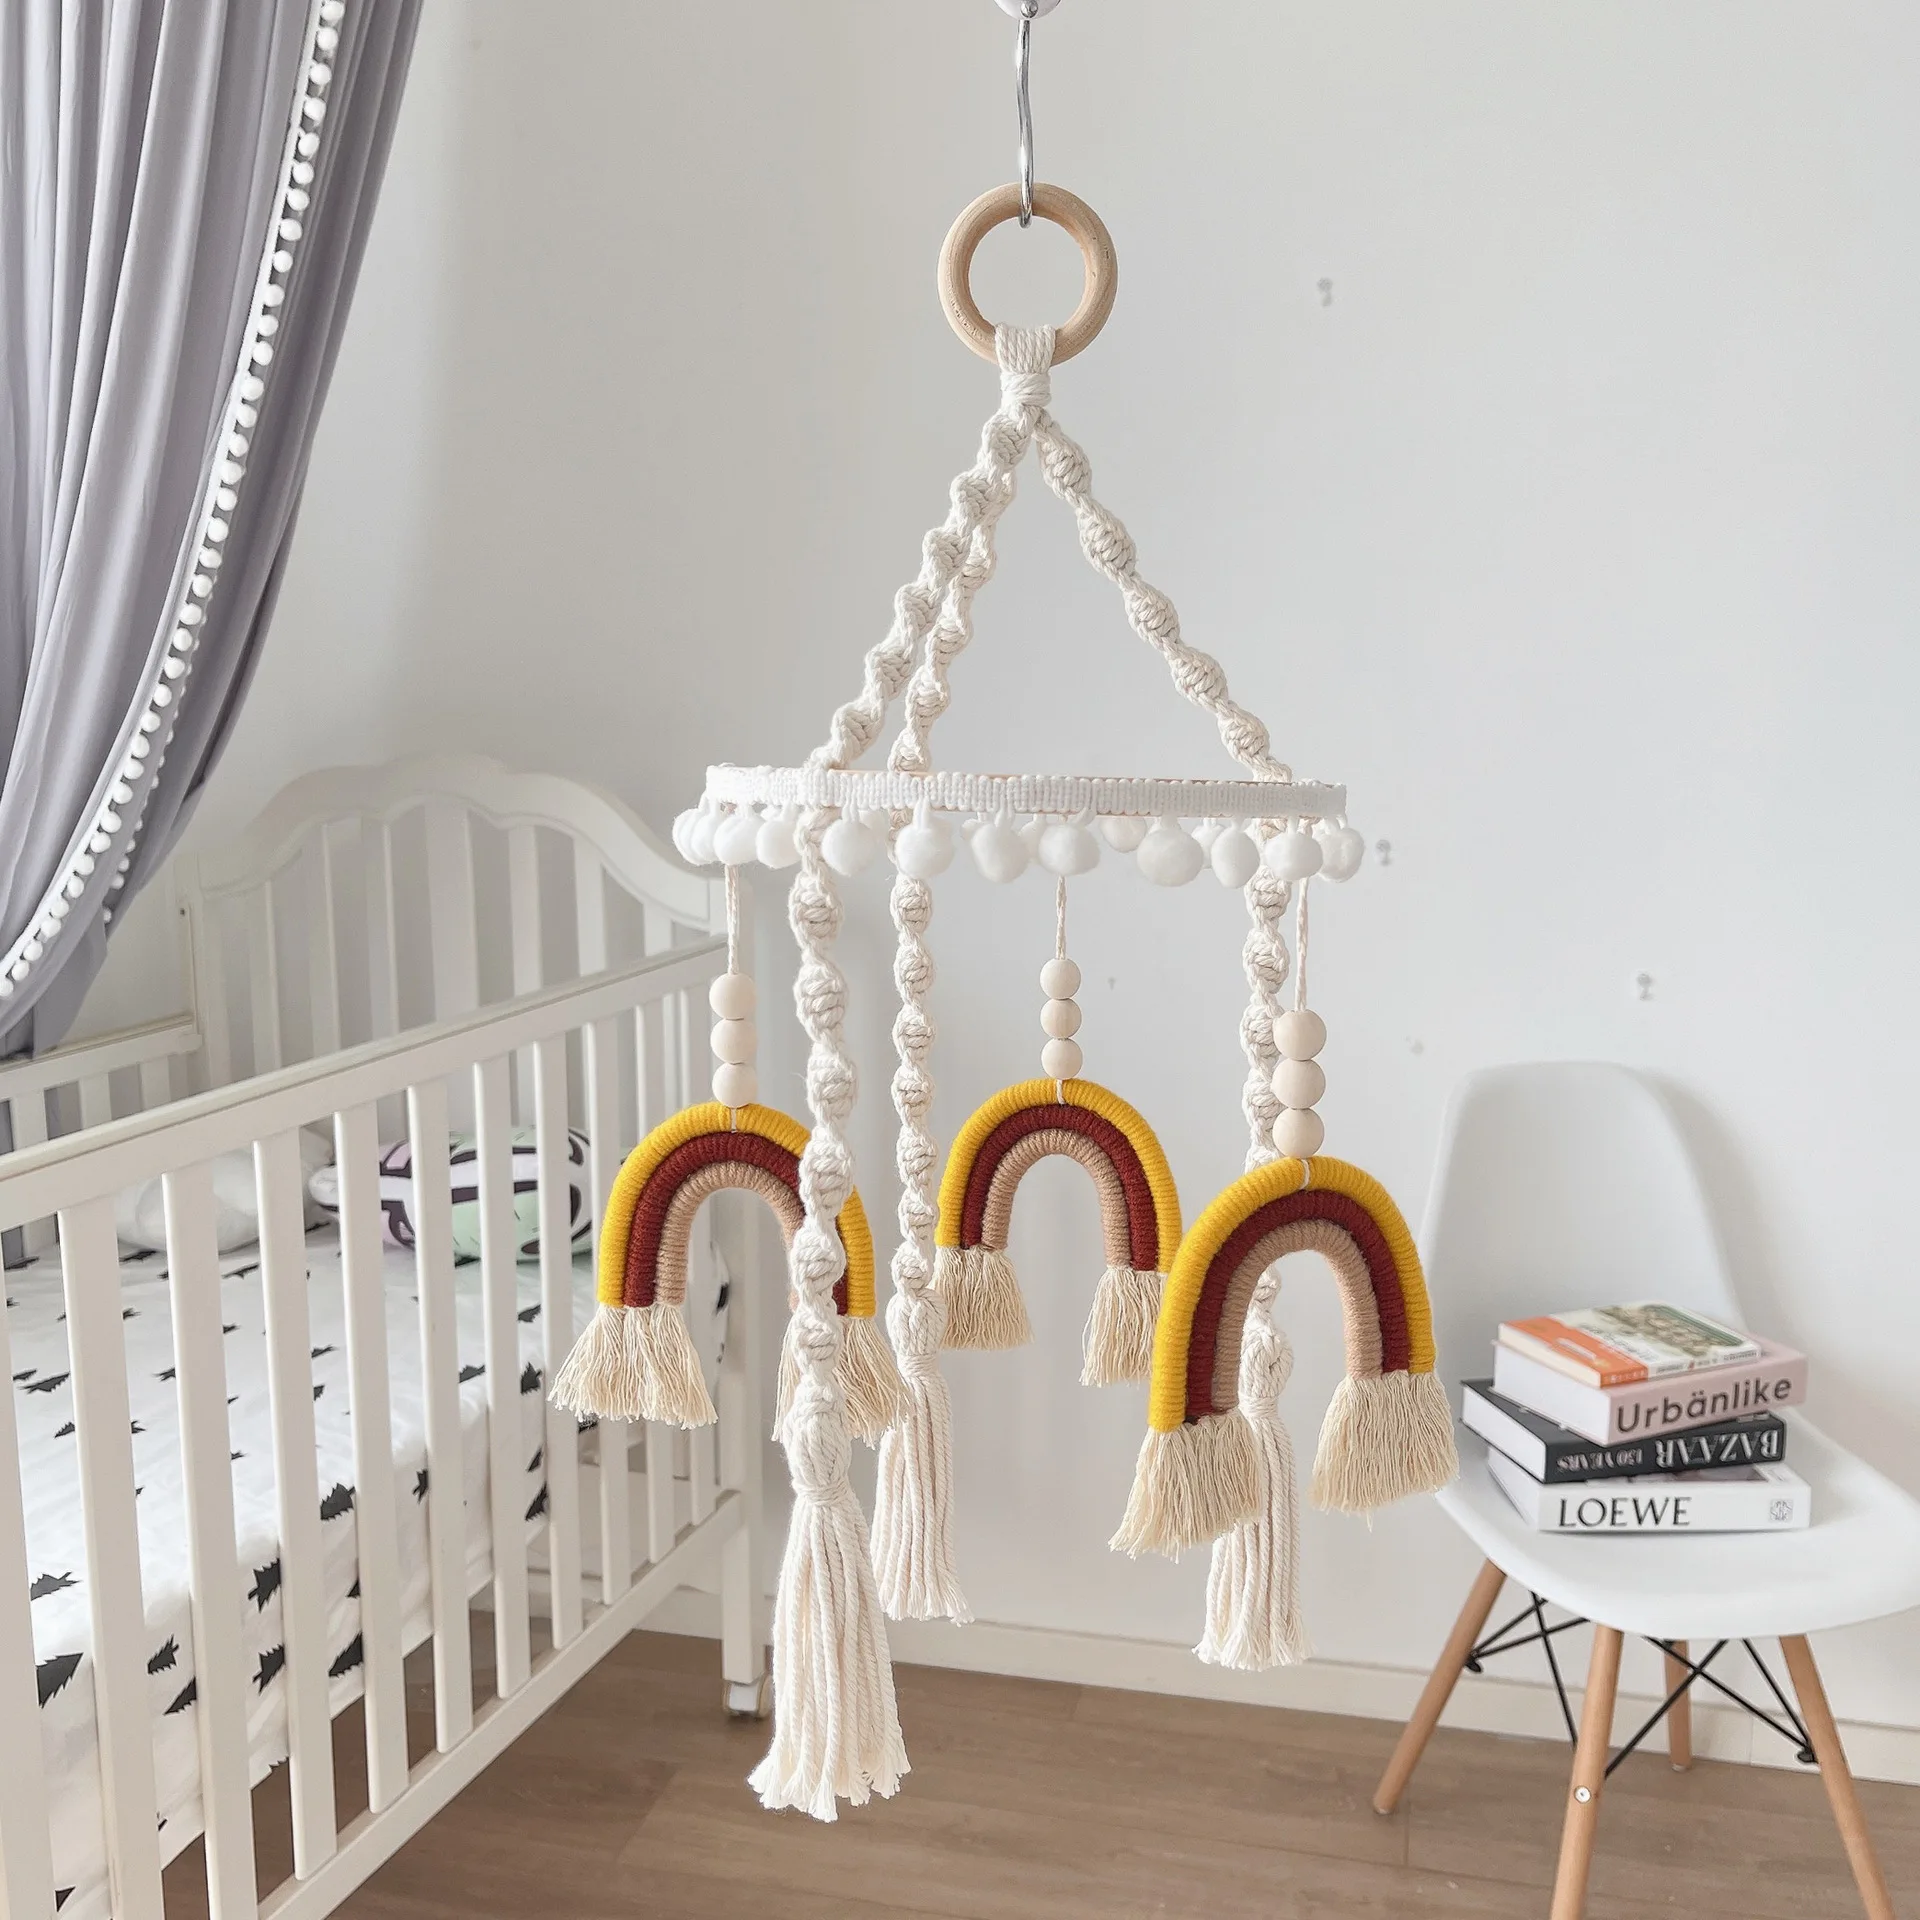 

Радужные настенные украшения ручной работы, плетеные богемные ветряные колокольчики в скандинавском стиле для младенцев, декор в стиле бохо для спальни, детской комнаты